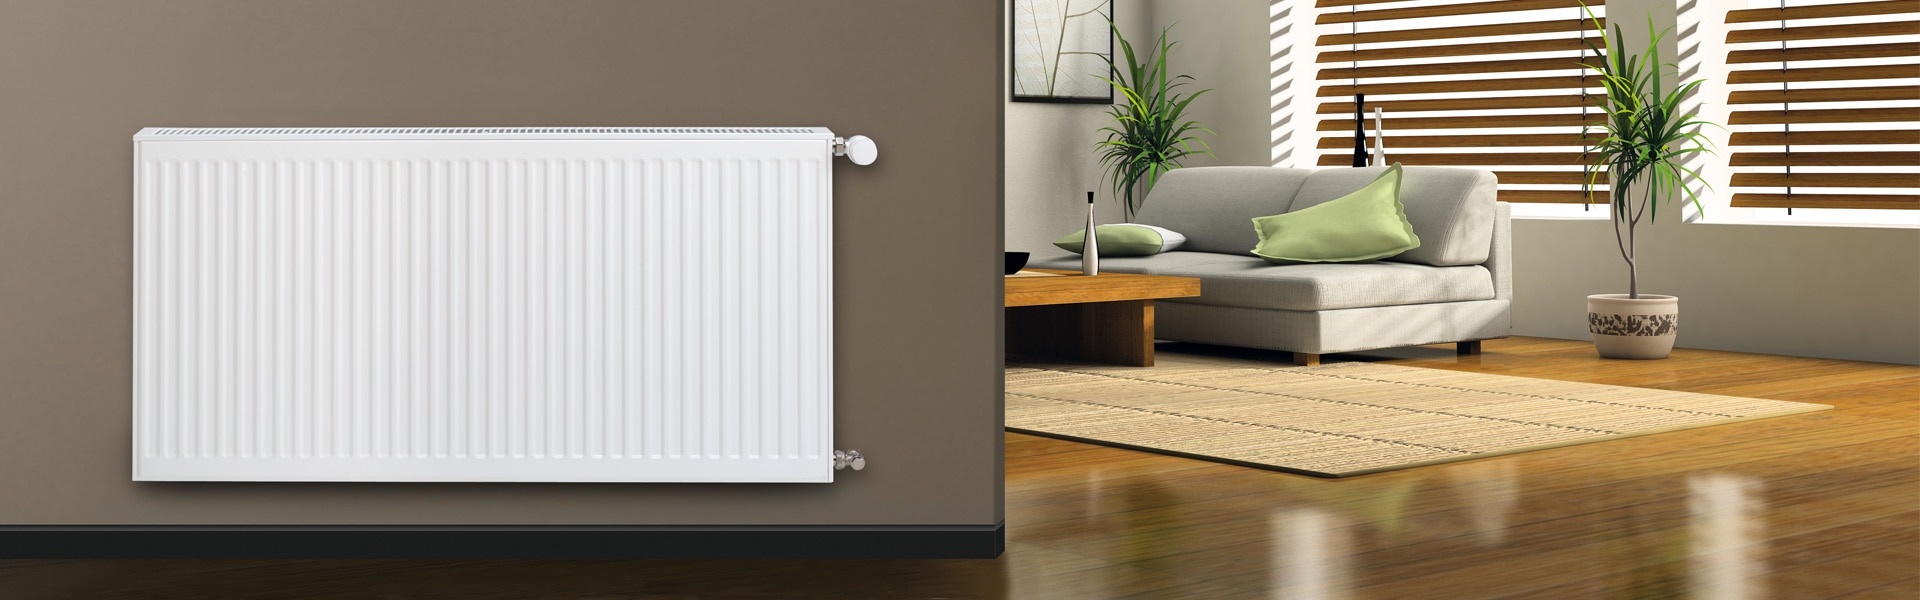 Odvzdušnit topení či radiátoru je jednoduché